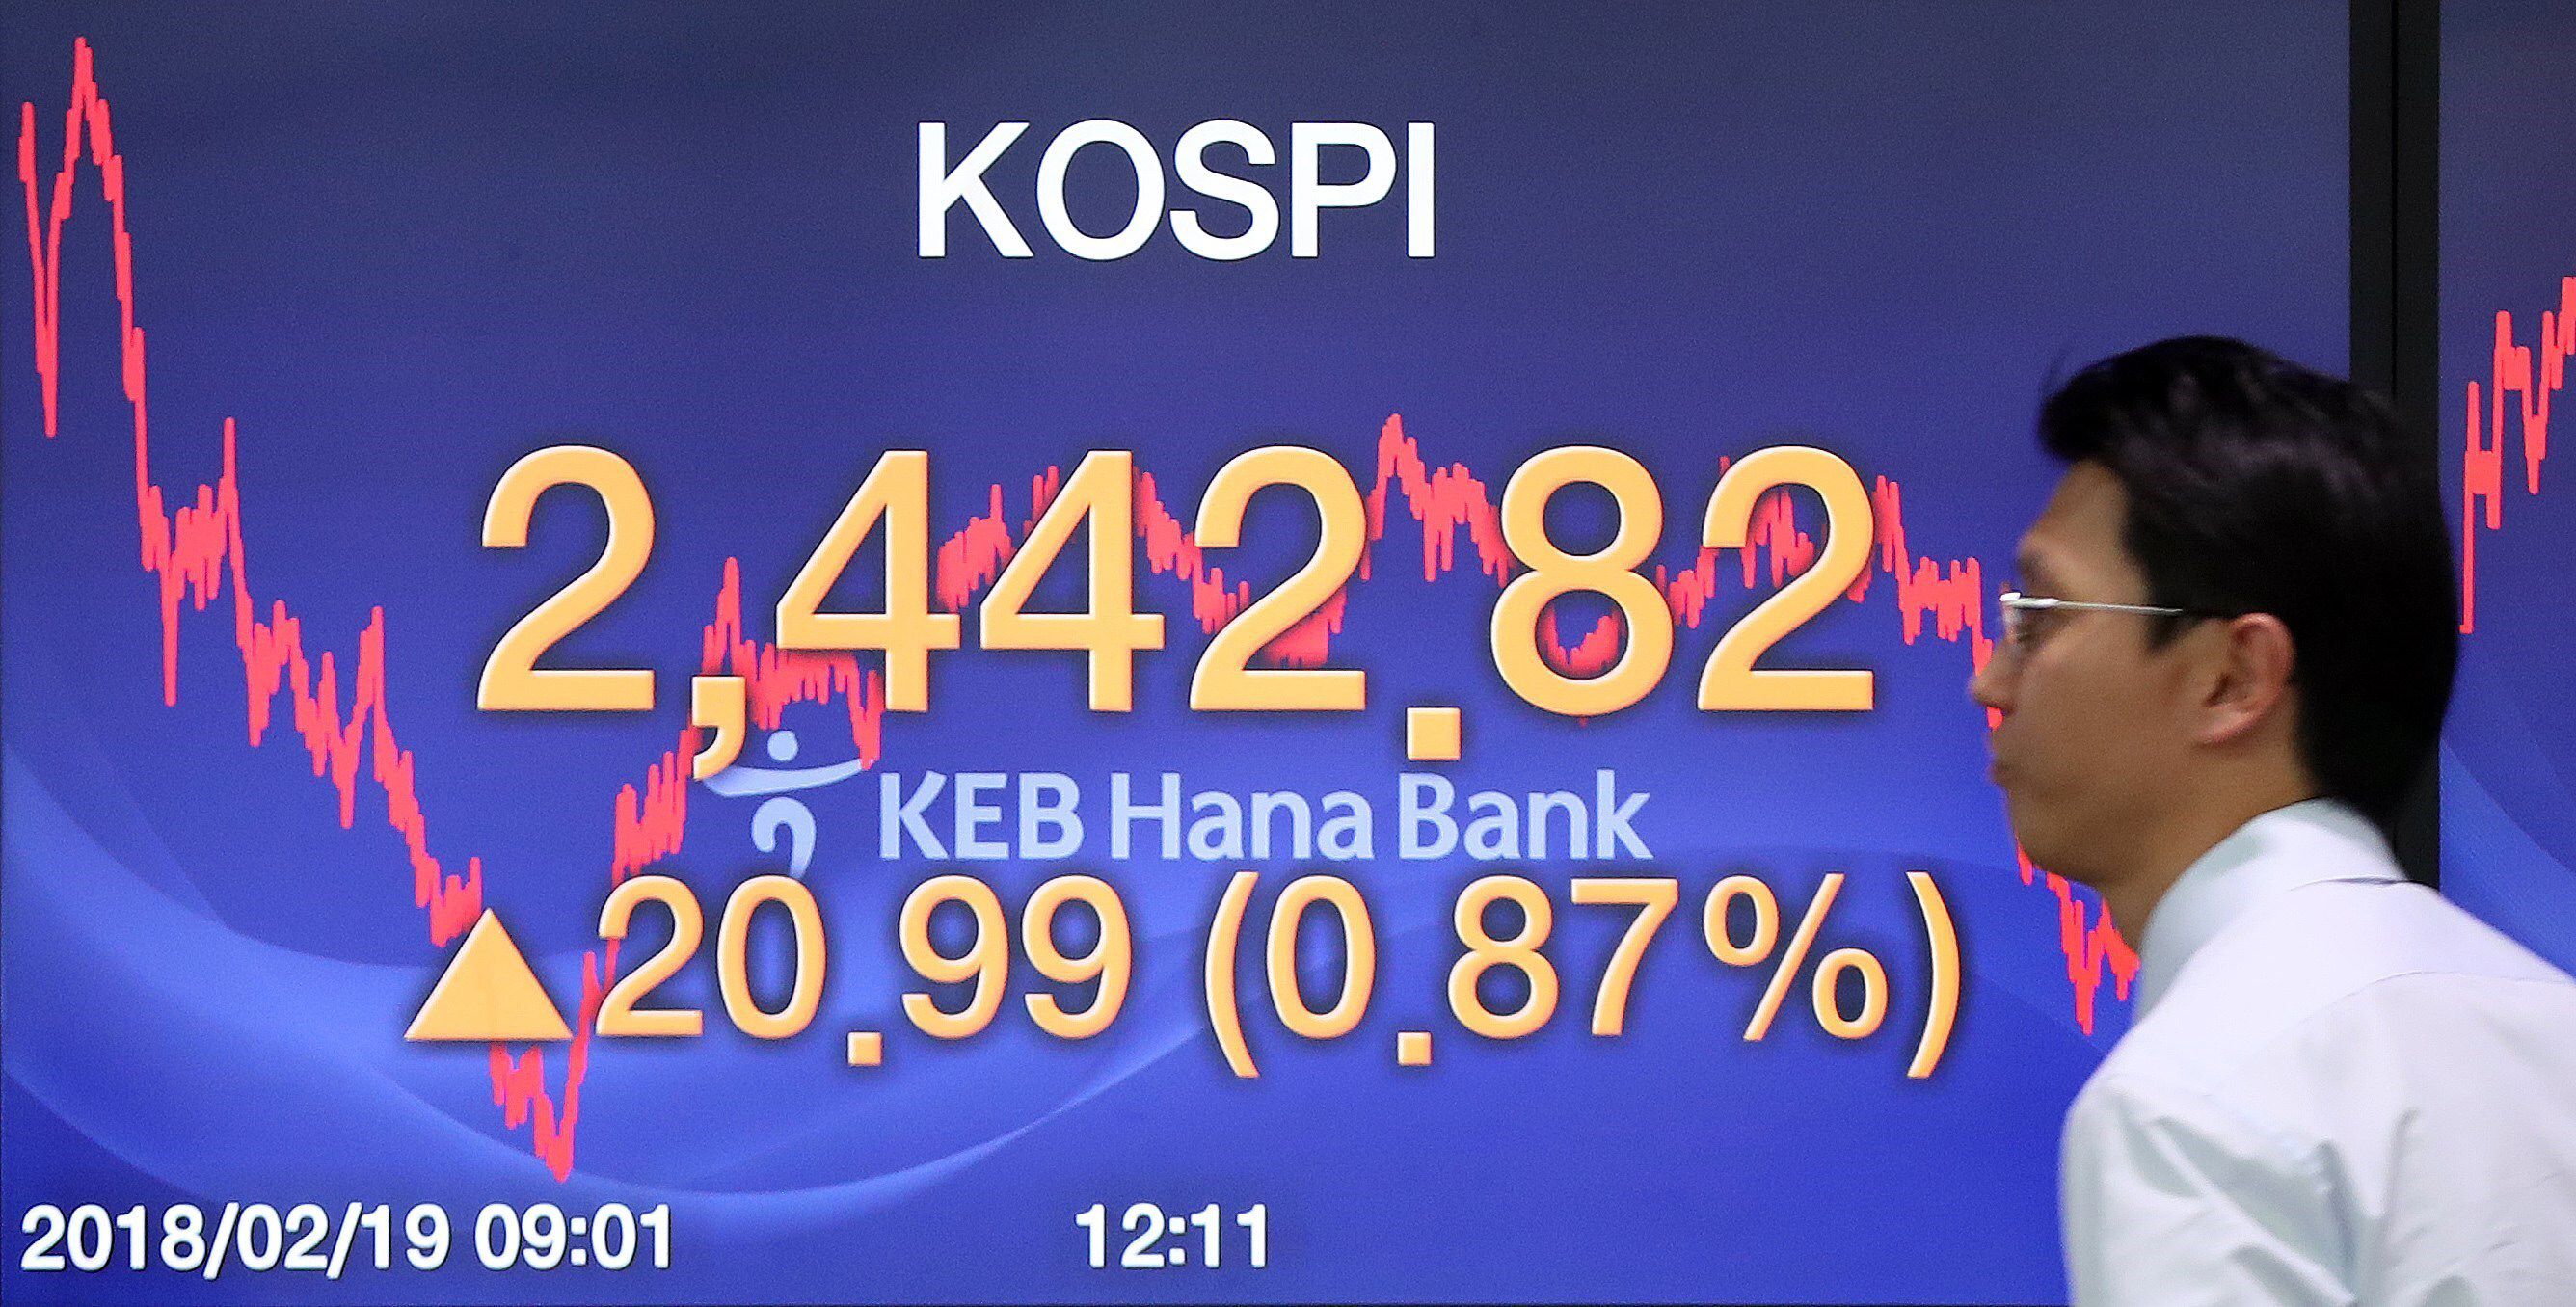 Un panel electrónico muestra el indicador Kospi del mercado surcoreano. EFE/ Yonhap/Archivo 